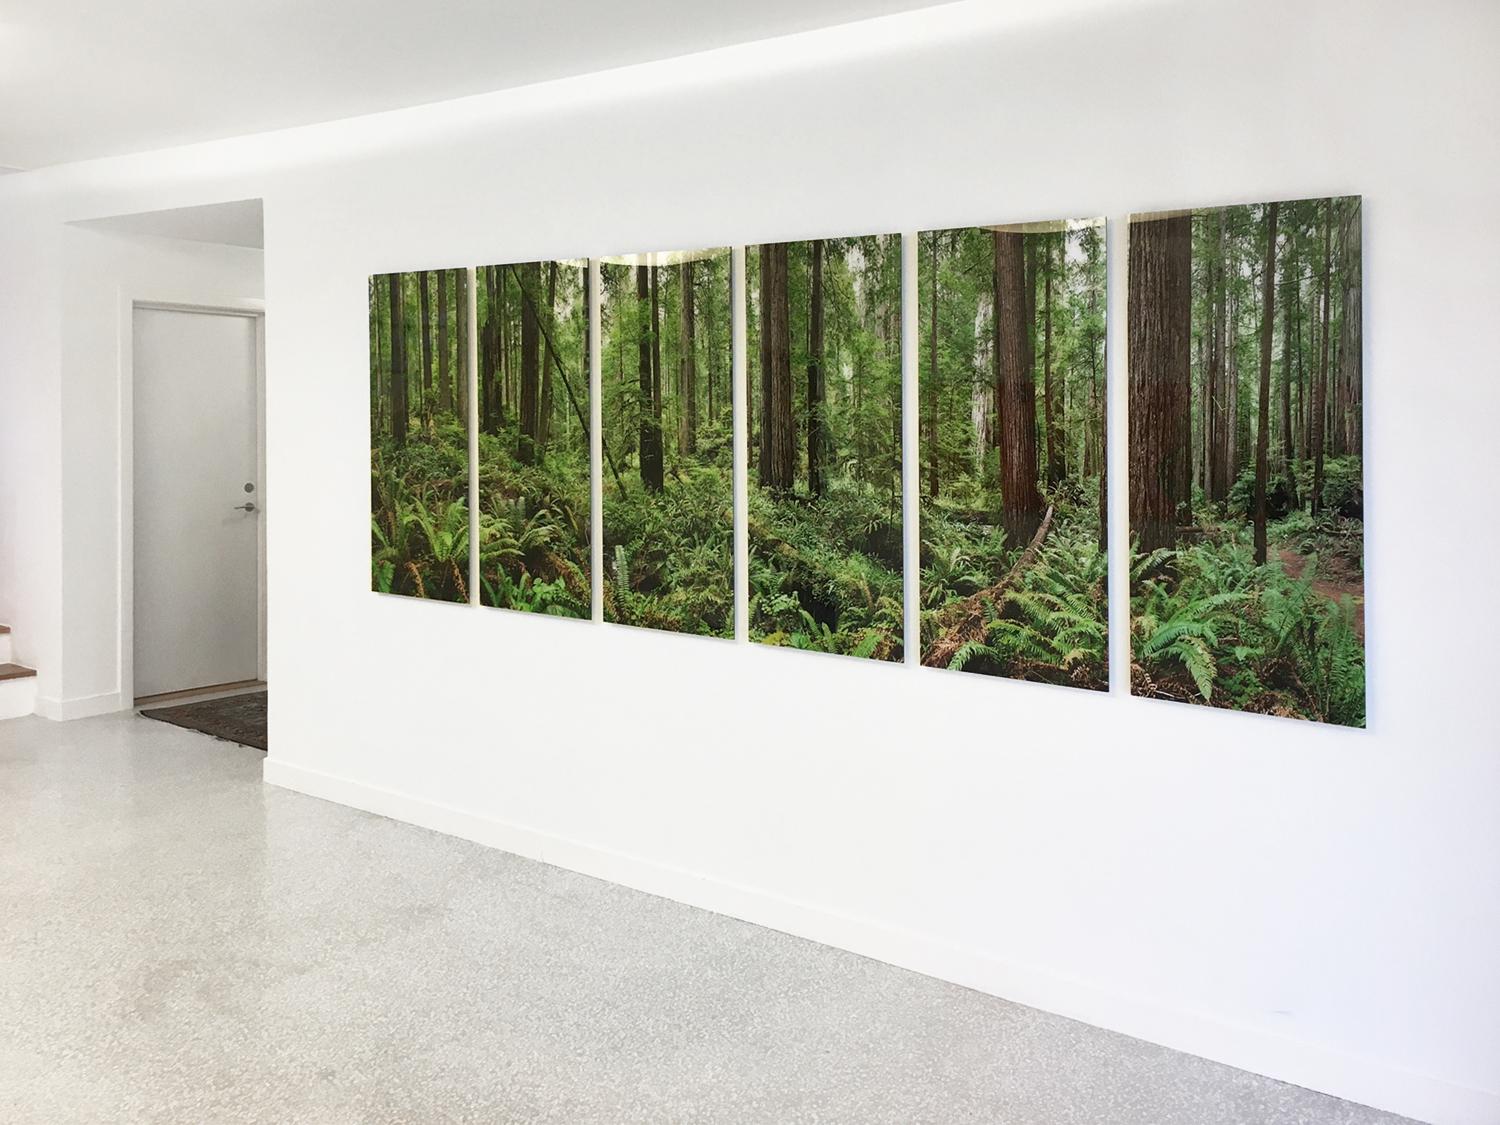 une photographie à grande échelle d'un biotope naturel vert émeraude luxuriant, une observation très détaillée de la beauté naturelle de la forêt de séquoias de Californie du Nord.

Redwoods par Erik Pawassar 

79 x 224 cm (31 x 88 pouces) 
édition